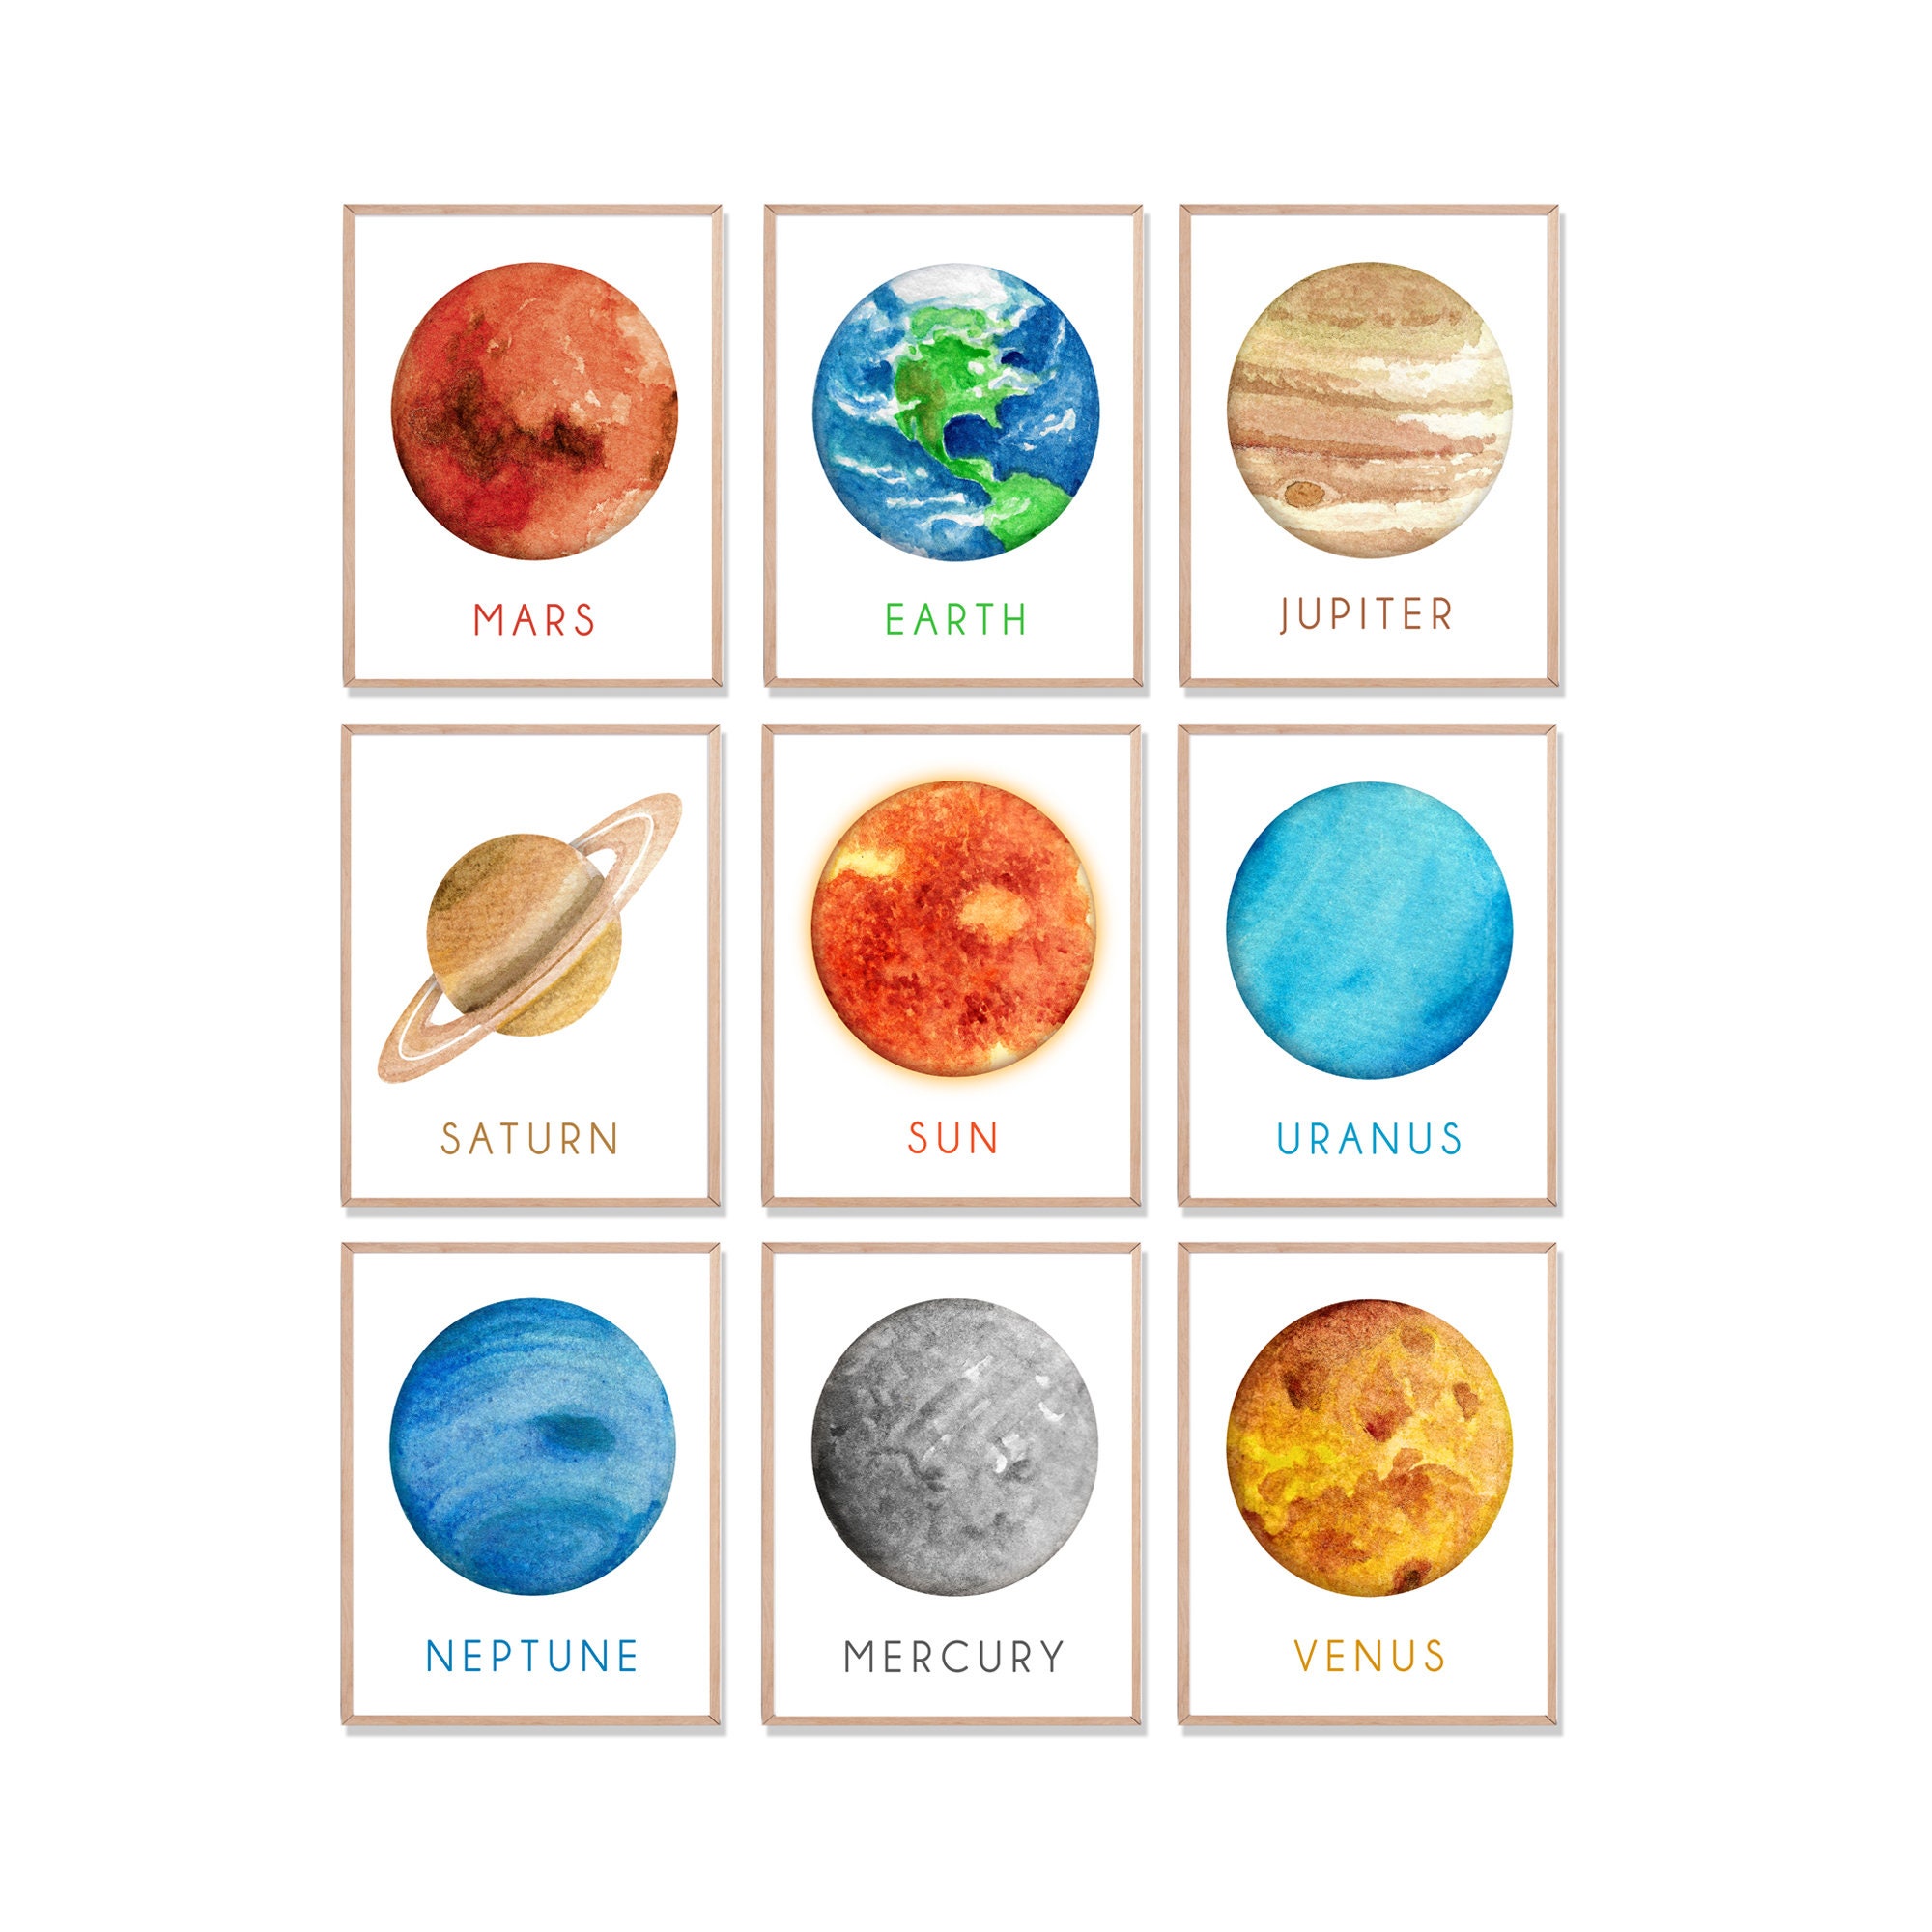 Распечатать планеты солнечной системы по отдельности. Планеты для распечатки. Планеты сахарная печать. Планеты солнечной системы для печати. Планеты солнечной системы для детей картинки.